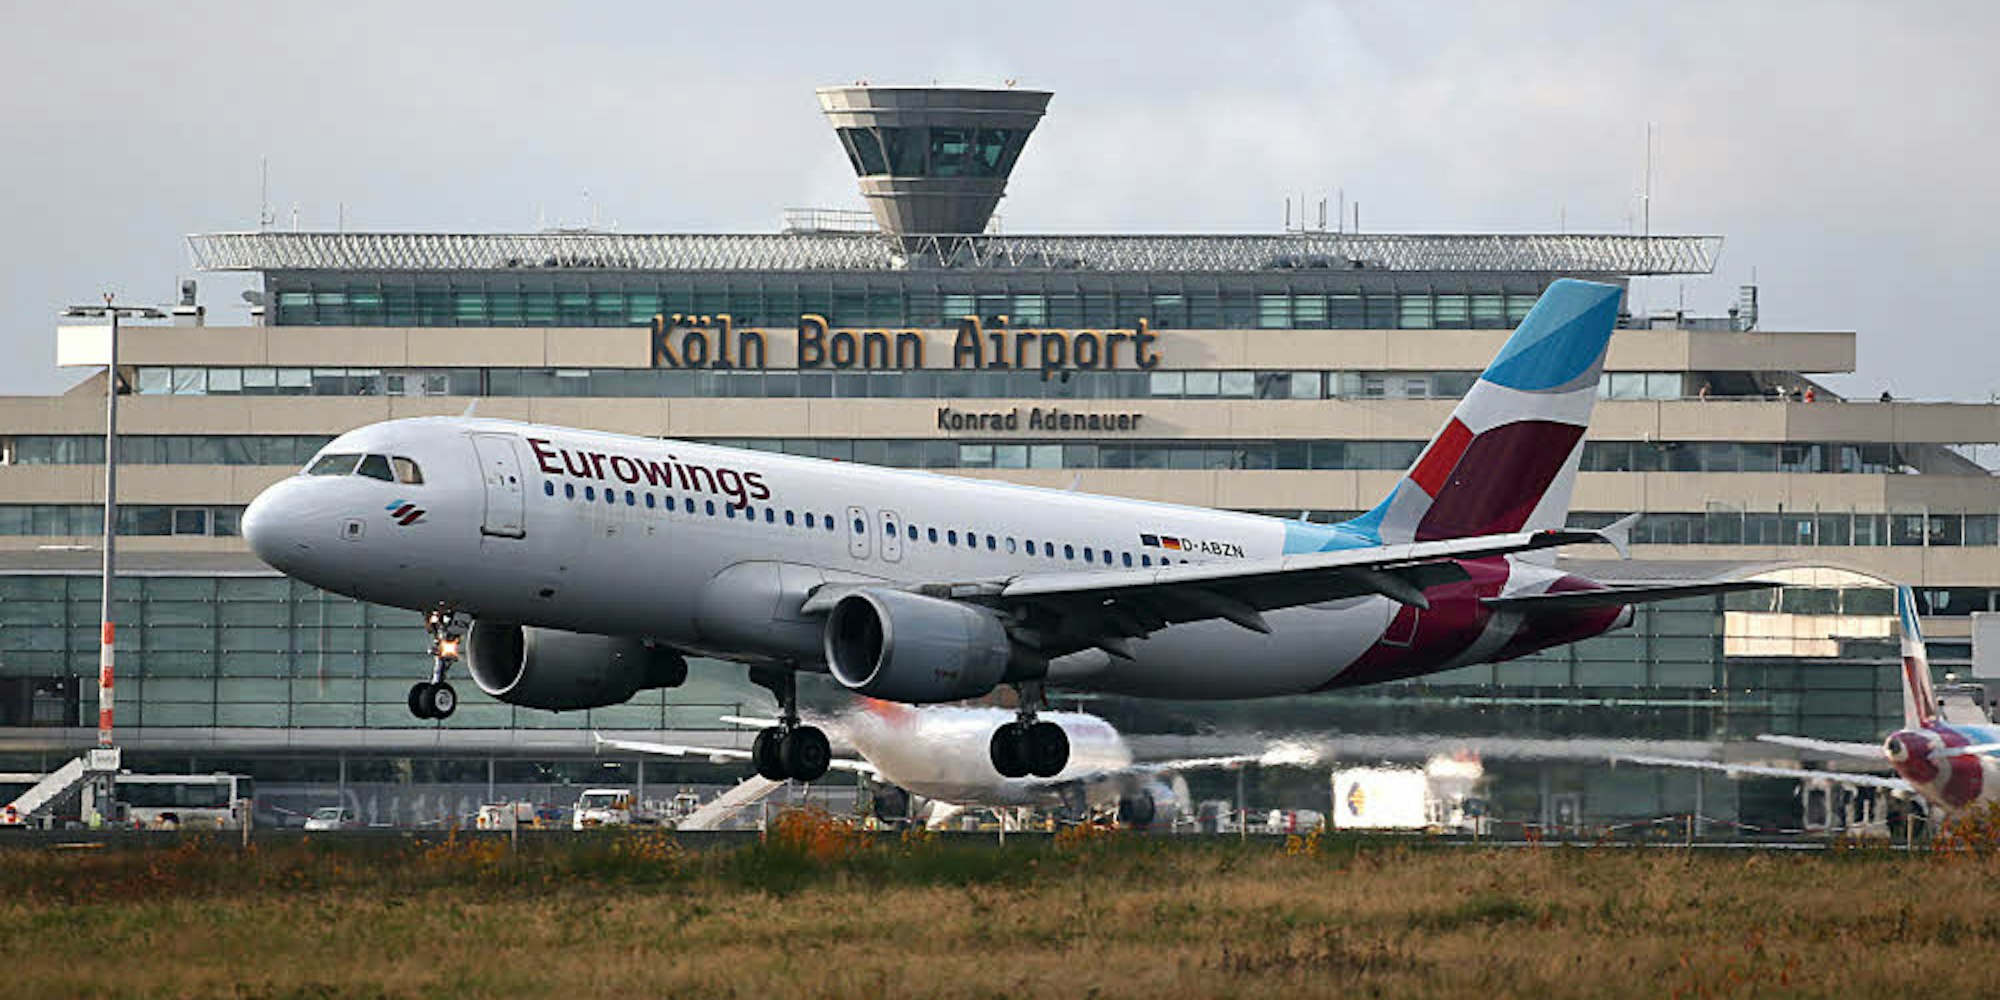 Der Flughafen Köln/Bonn hat bei der Landesregierung einen Antrag auf ein Planfeststellungsverfahren für verschiedene Baumaßnahmen eingereicht. Bürger konnten dagegen Einwendungen erheben.